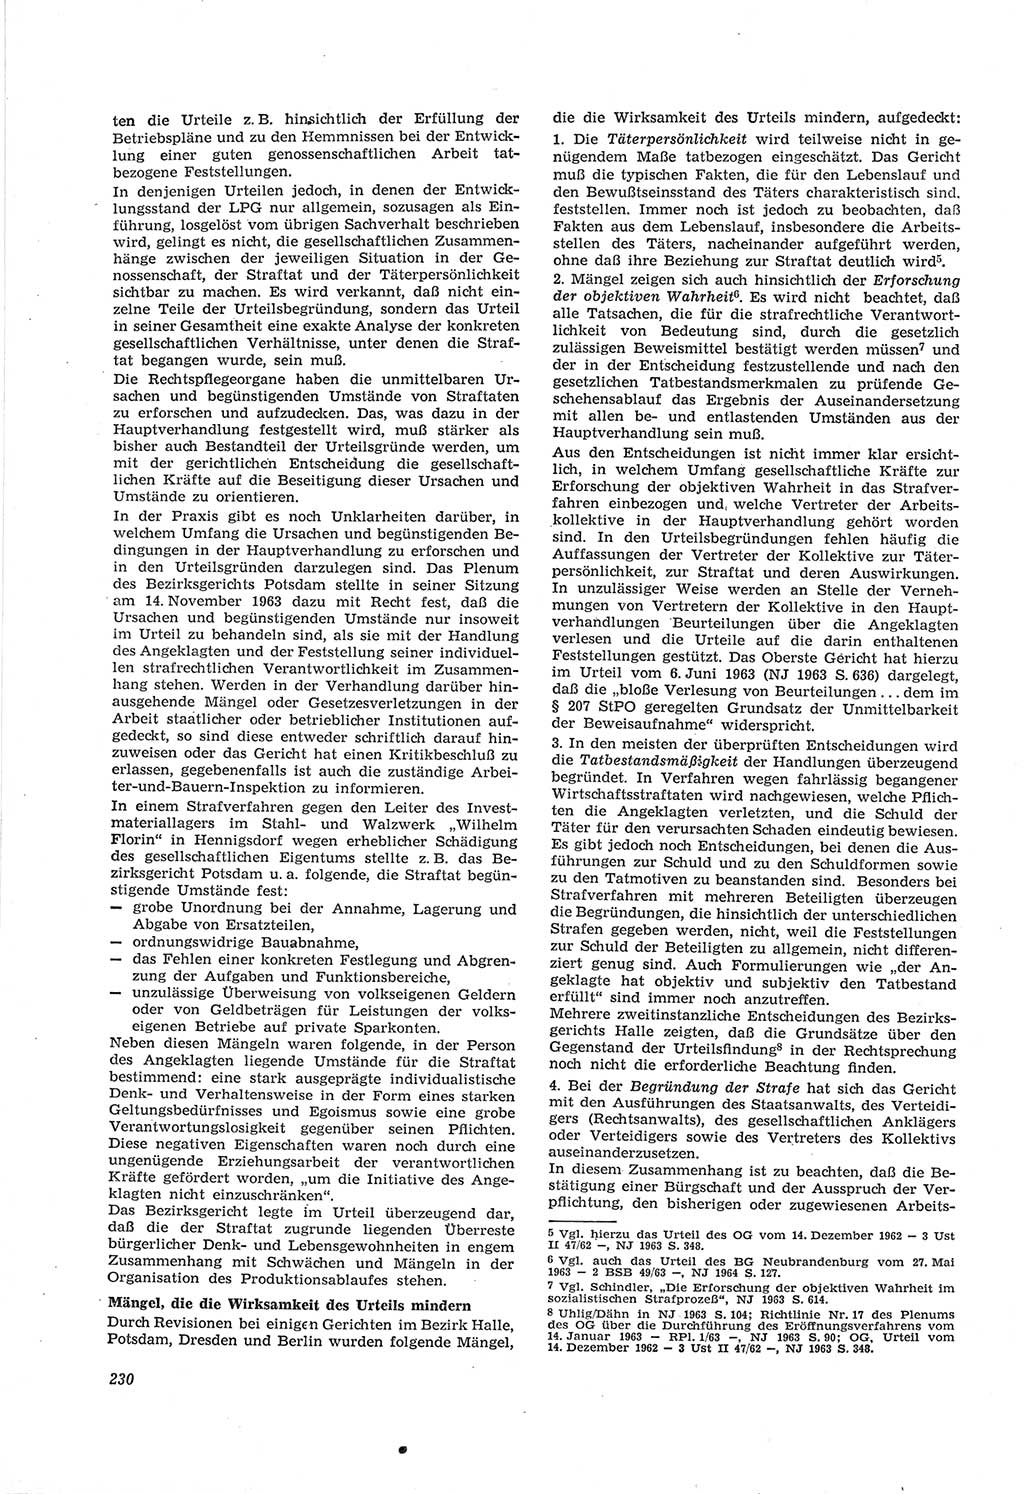 Neue Justiz (NJ), Zeitschrift für Recht und Rechtswissenschaft [Deutsche Demokratische Republik (DDR)], 18. Jahrgang 1964, Seite 230 (NJ DDR 1964, S. 230)